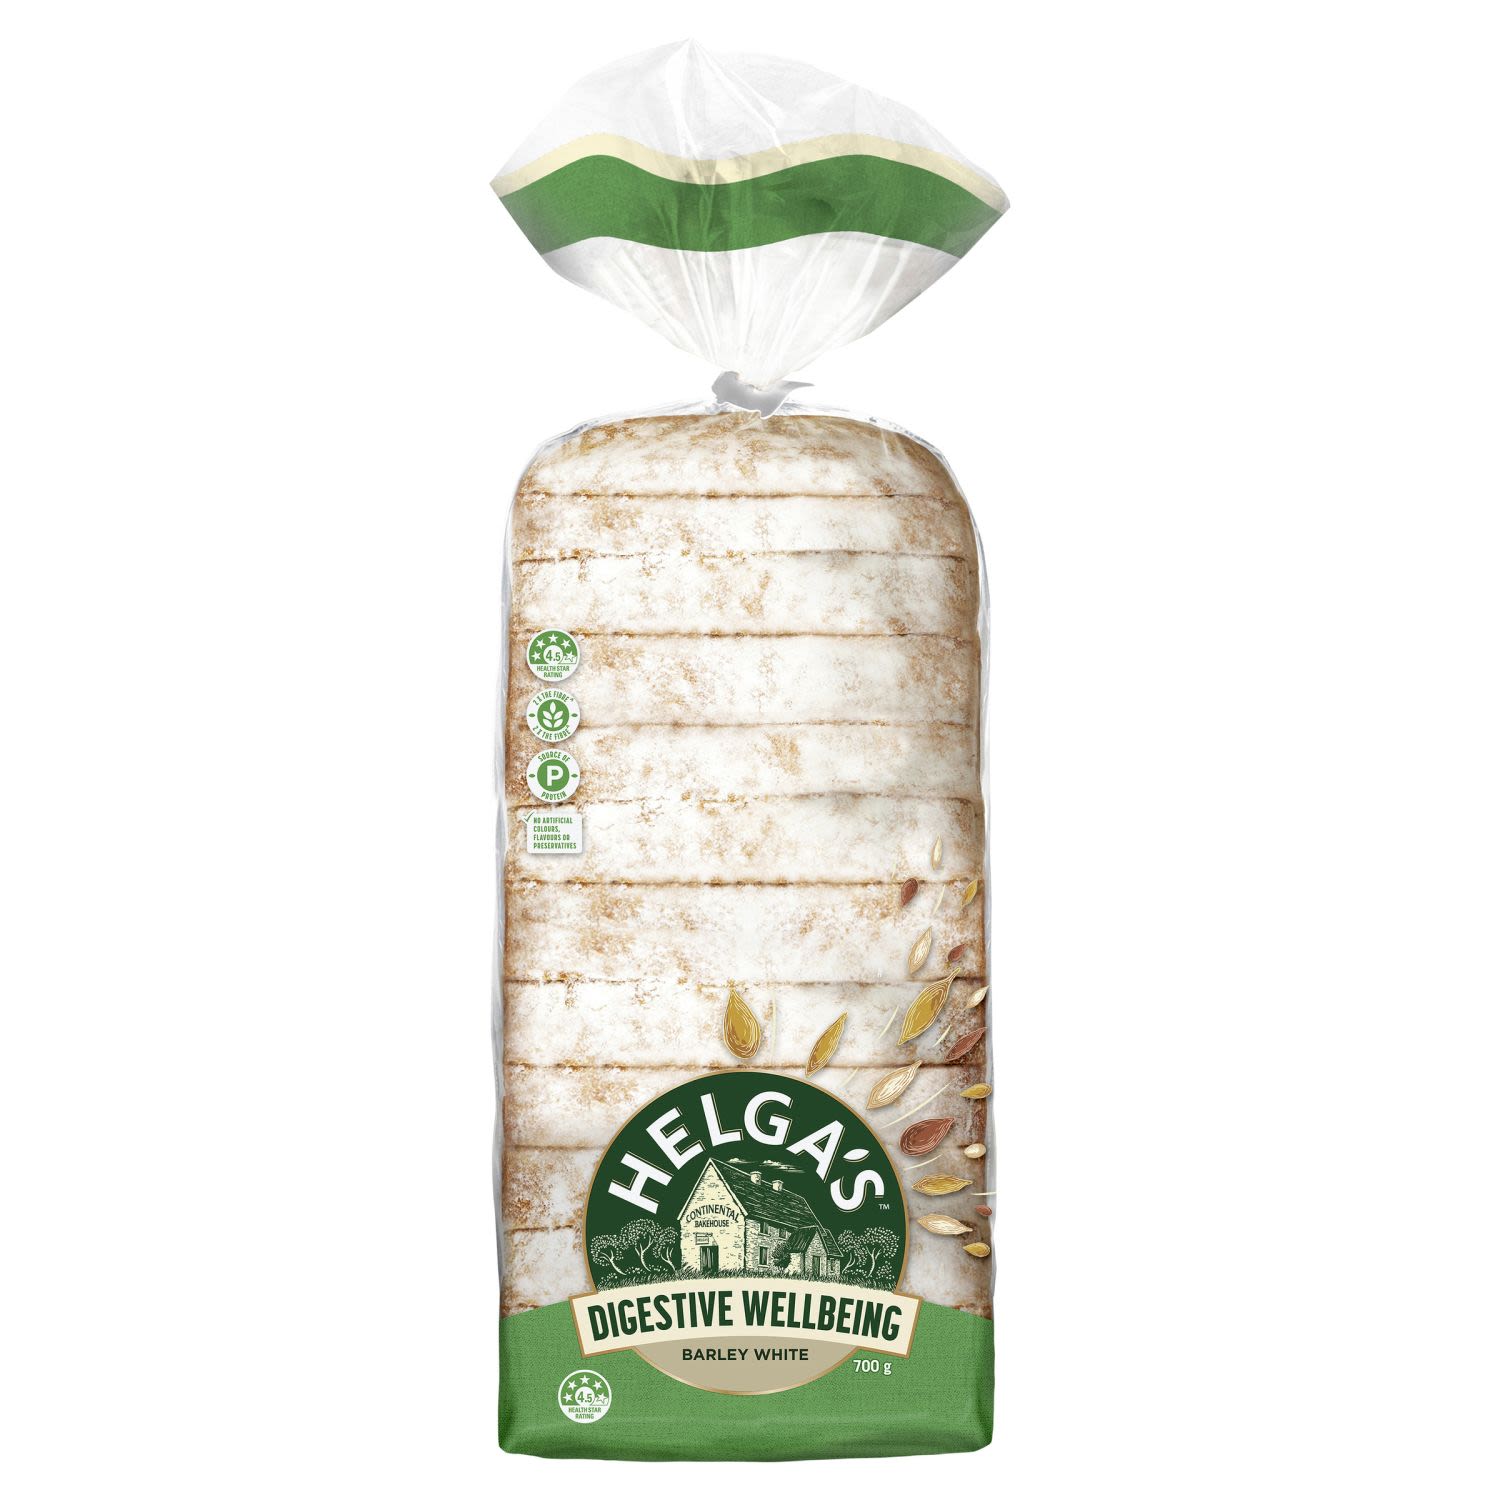 Helga's Digestive Wellbeing Barley White Loaf, 700 Gram